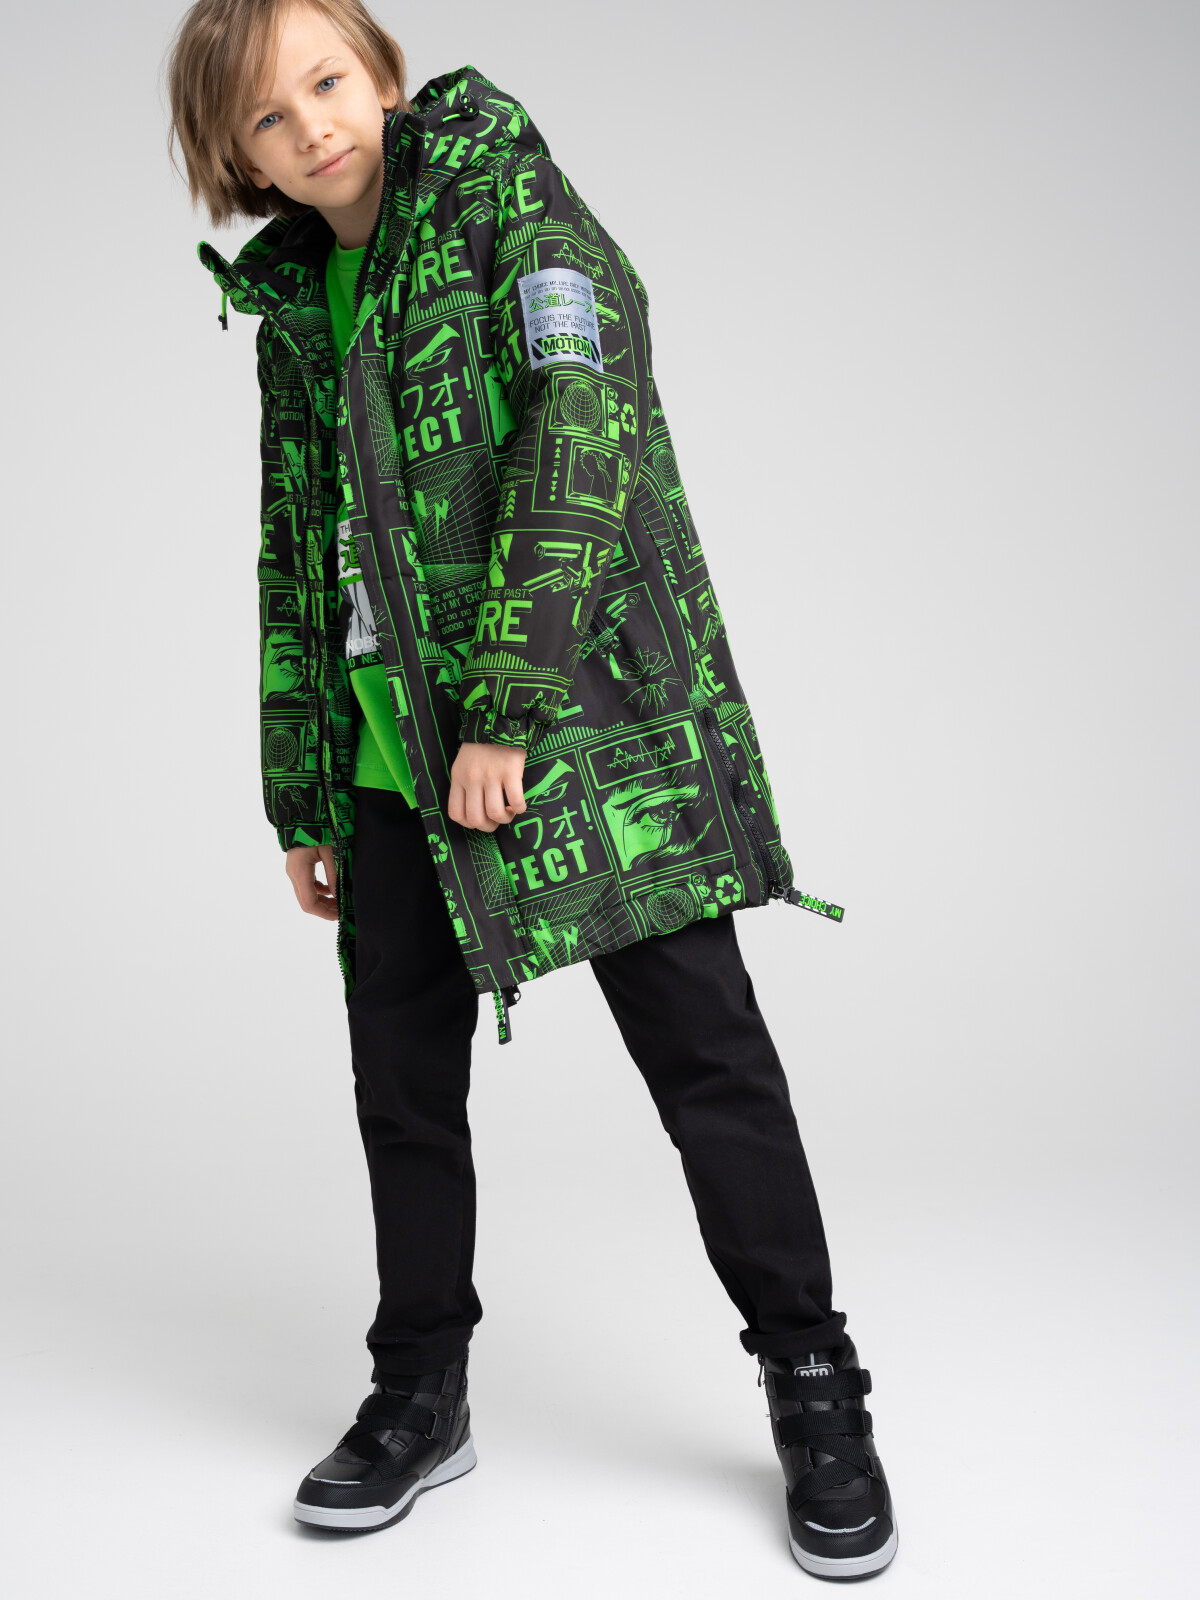 Куртка текстильная с полиуретановым покрытием для мальчиков PlayToday, цветной, 164